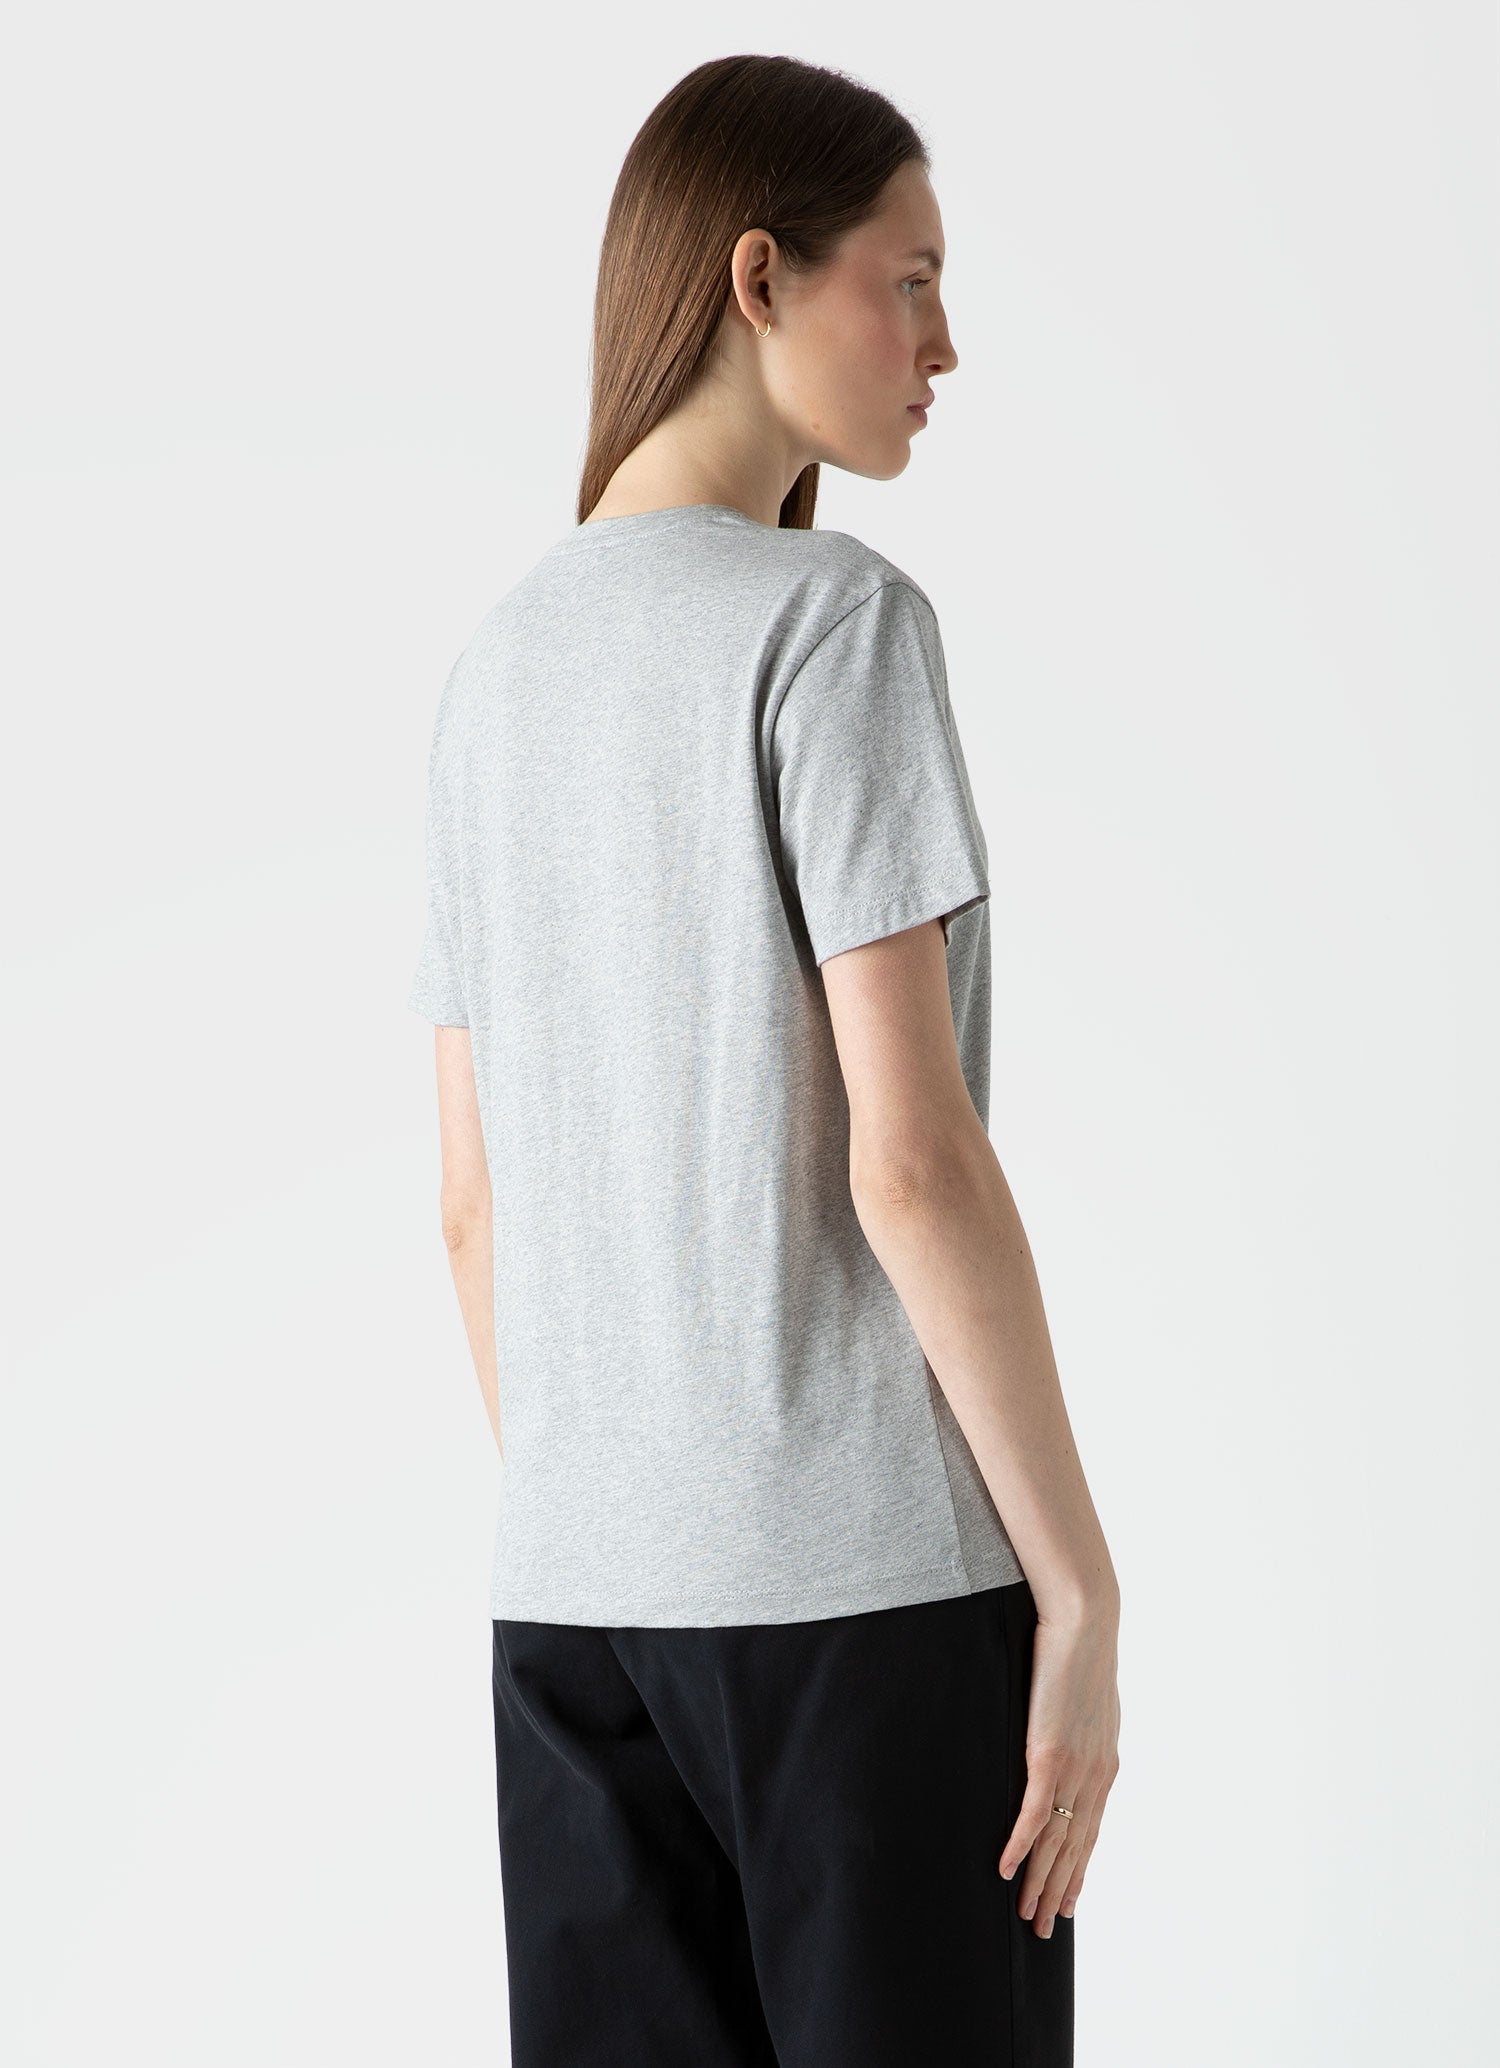 Women's Boy Fit T-shirt in Grey Melange